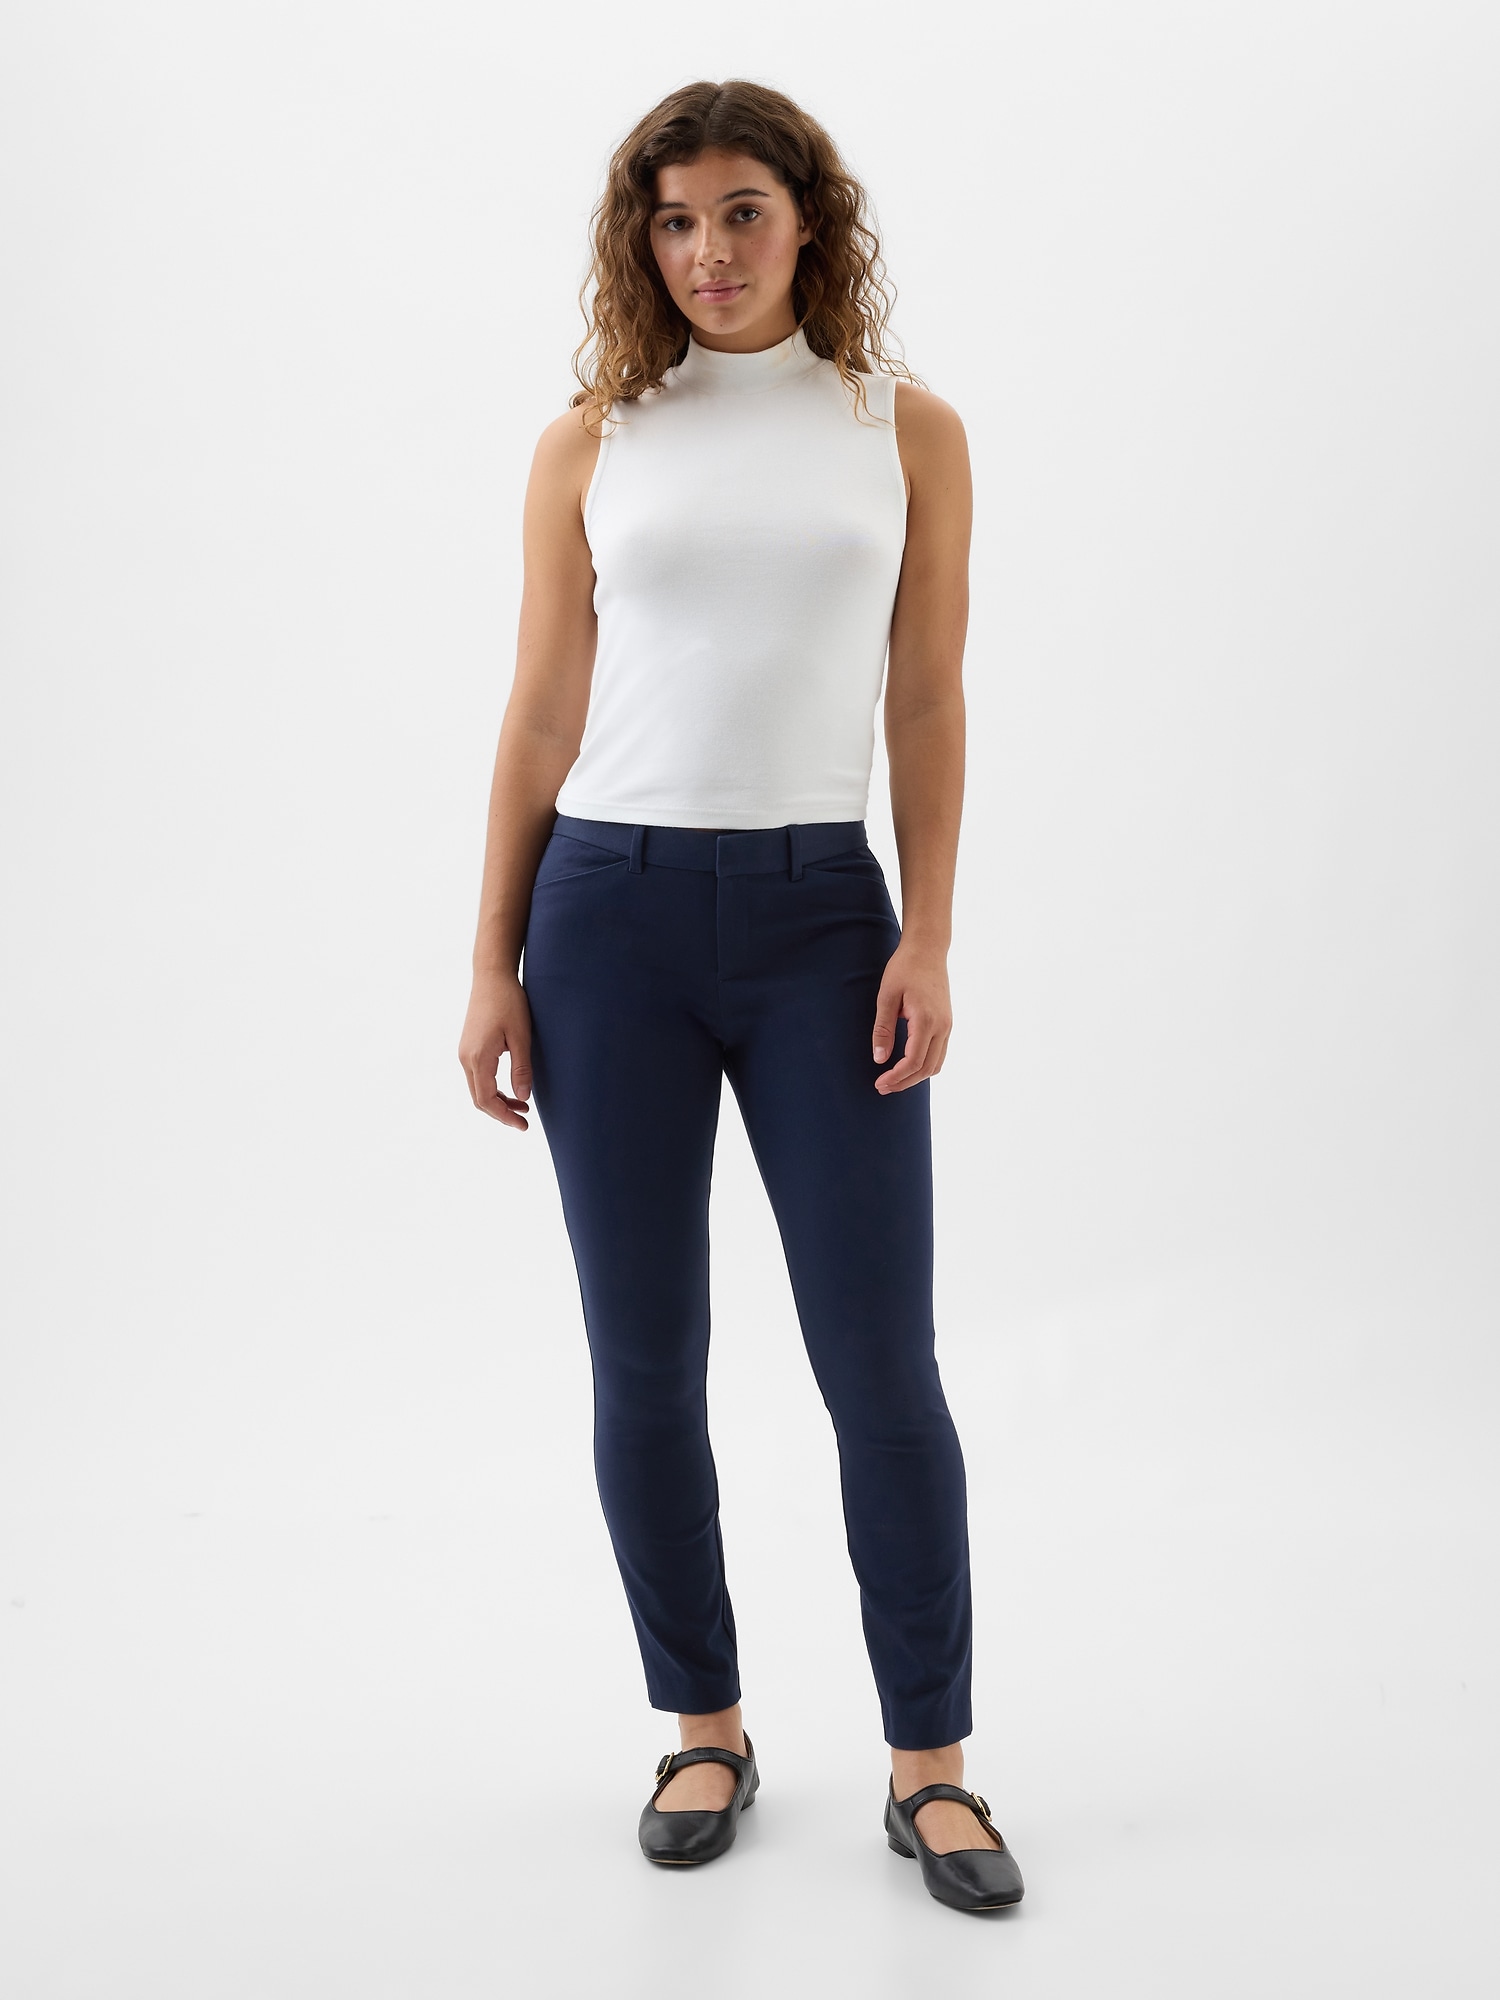 Gap NWT Women's Stretch Skinny Pants Size 16 Gray